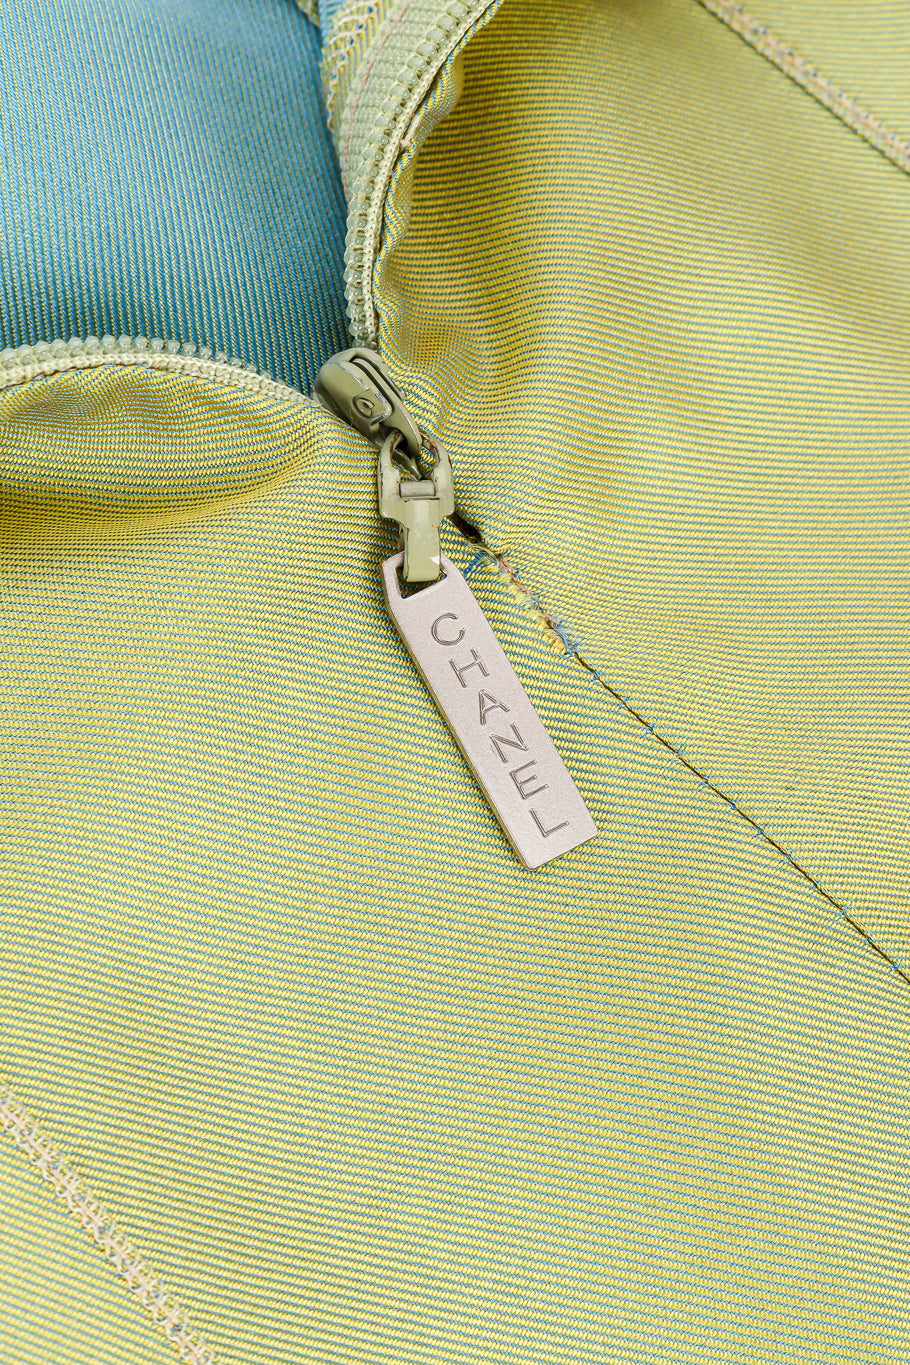 Iridescent maxi skirt by Chanel zipper close @recessla